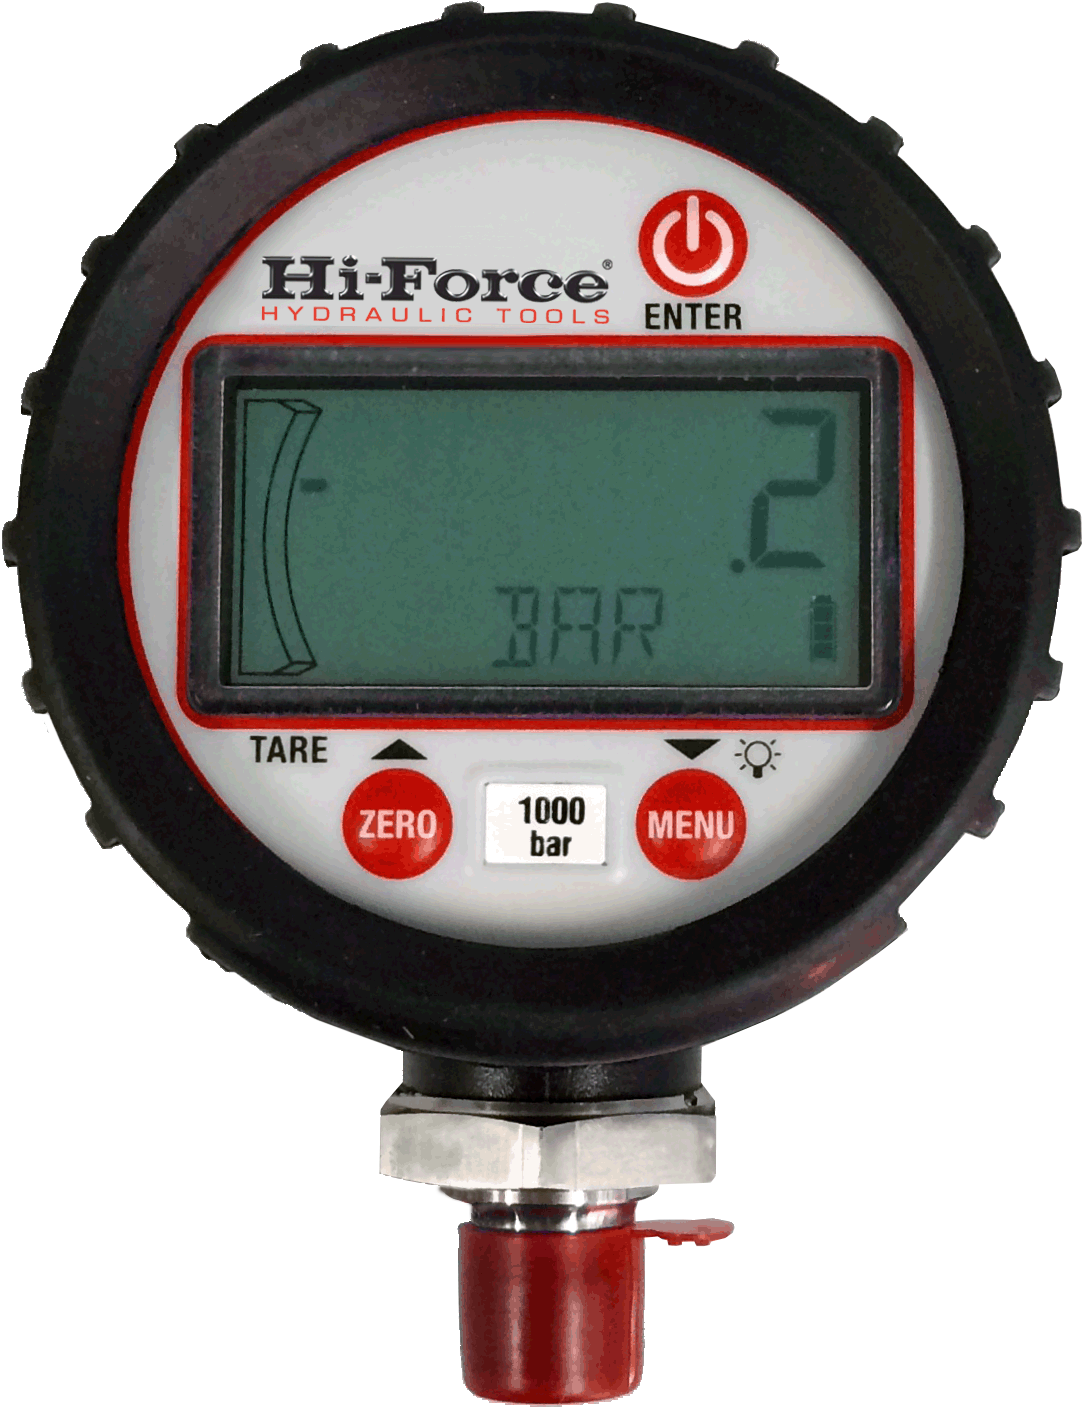 HDG Digital Pressure Gauge